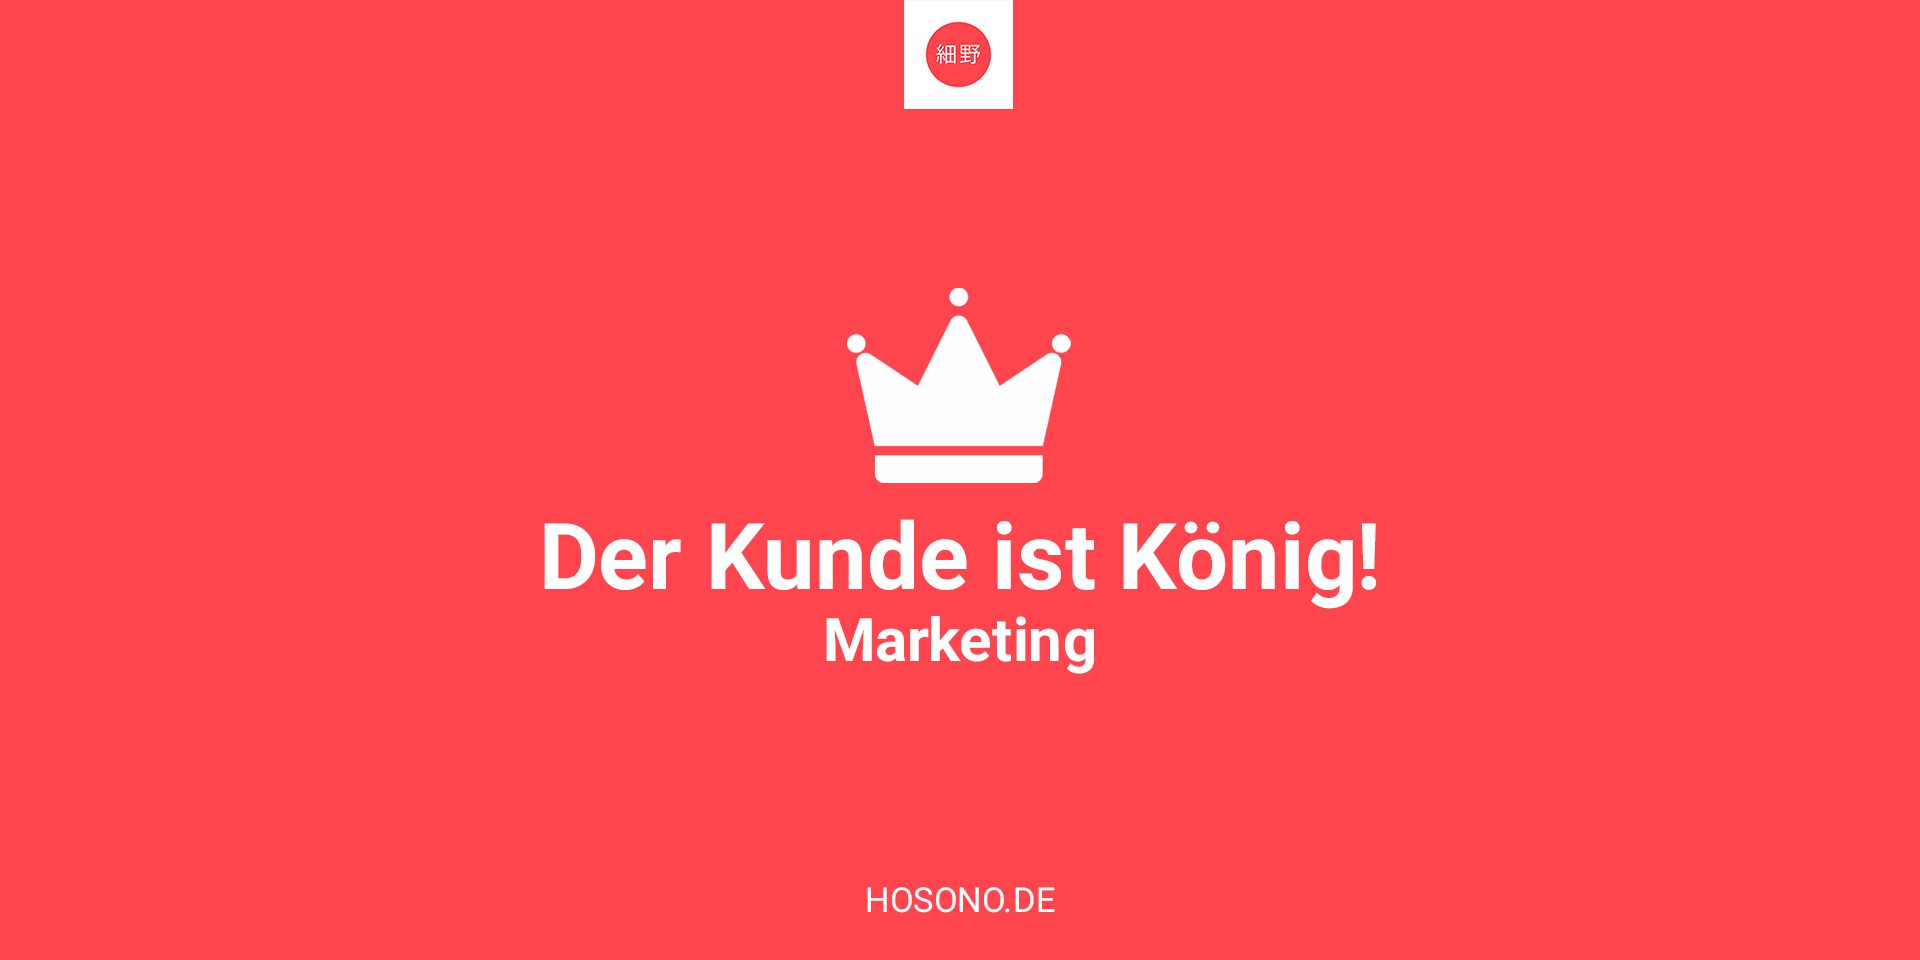 Das neue Marketing – Kunde ist König vor allem jetzt!